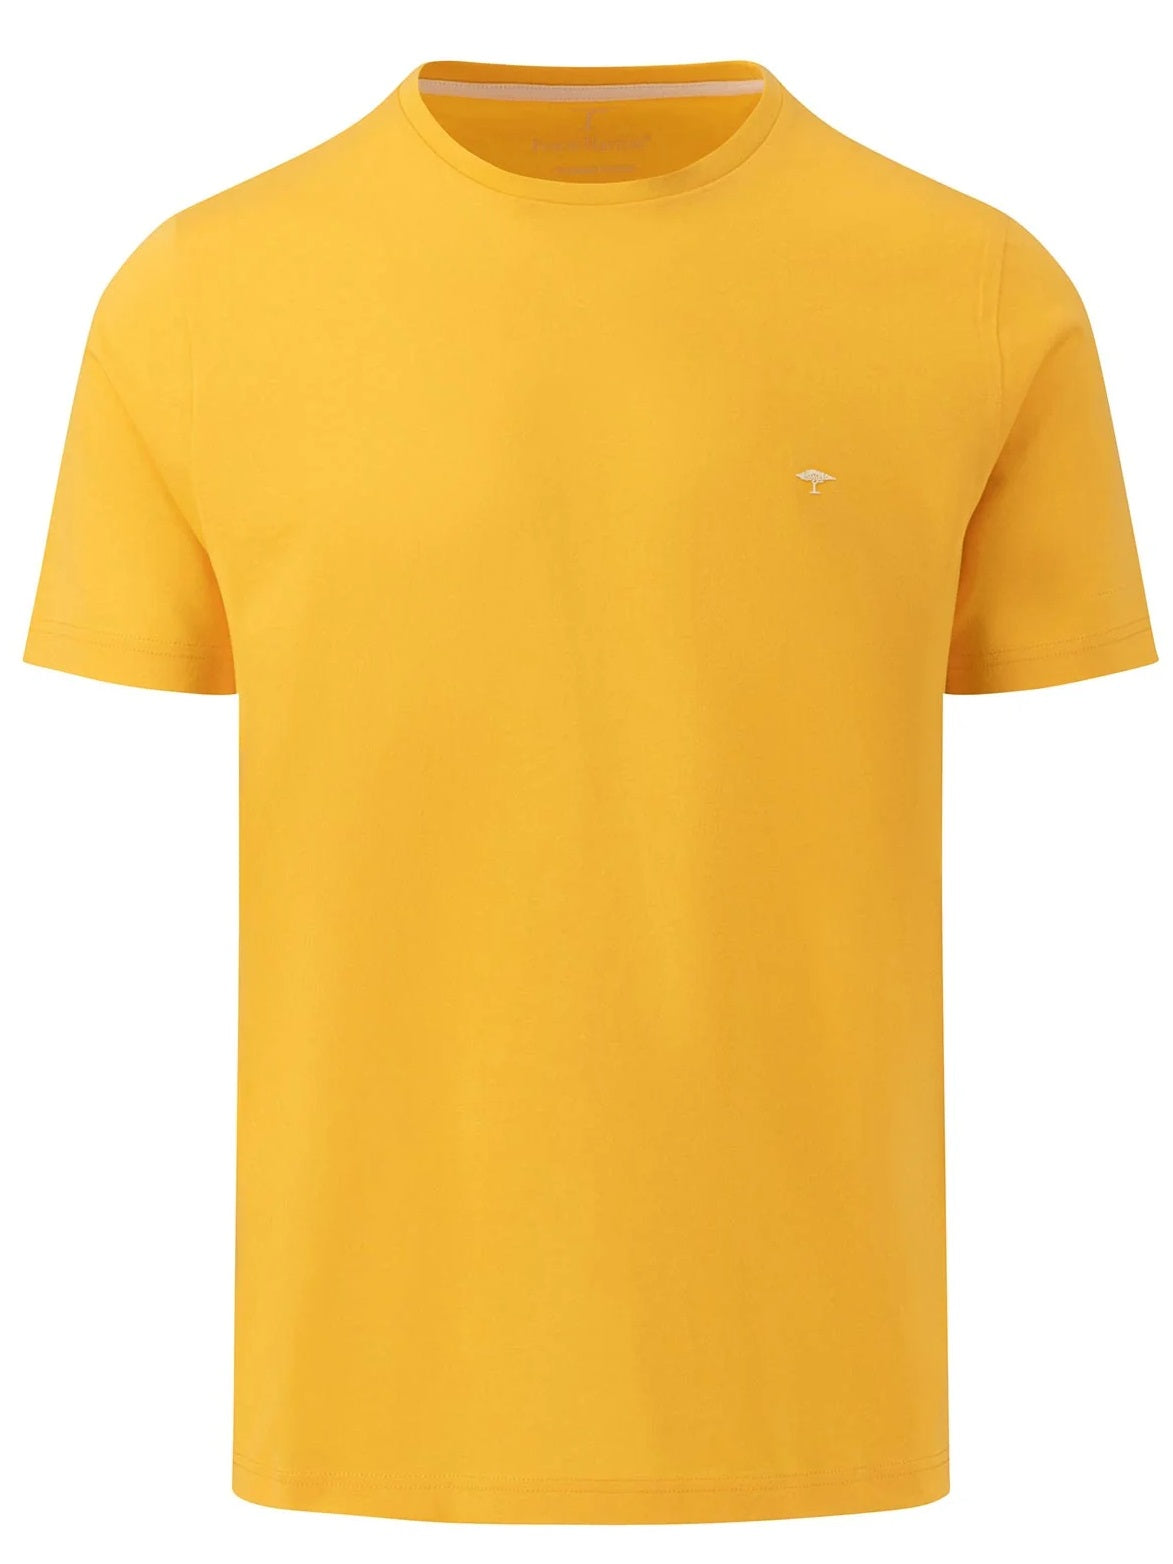 FYNCH HATTON T-Shirt - Men's Round Neck – Pineapple